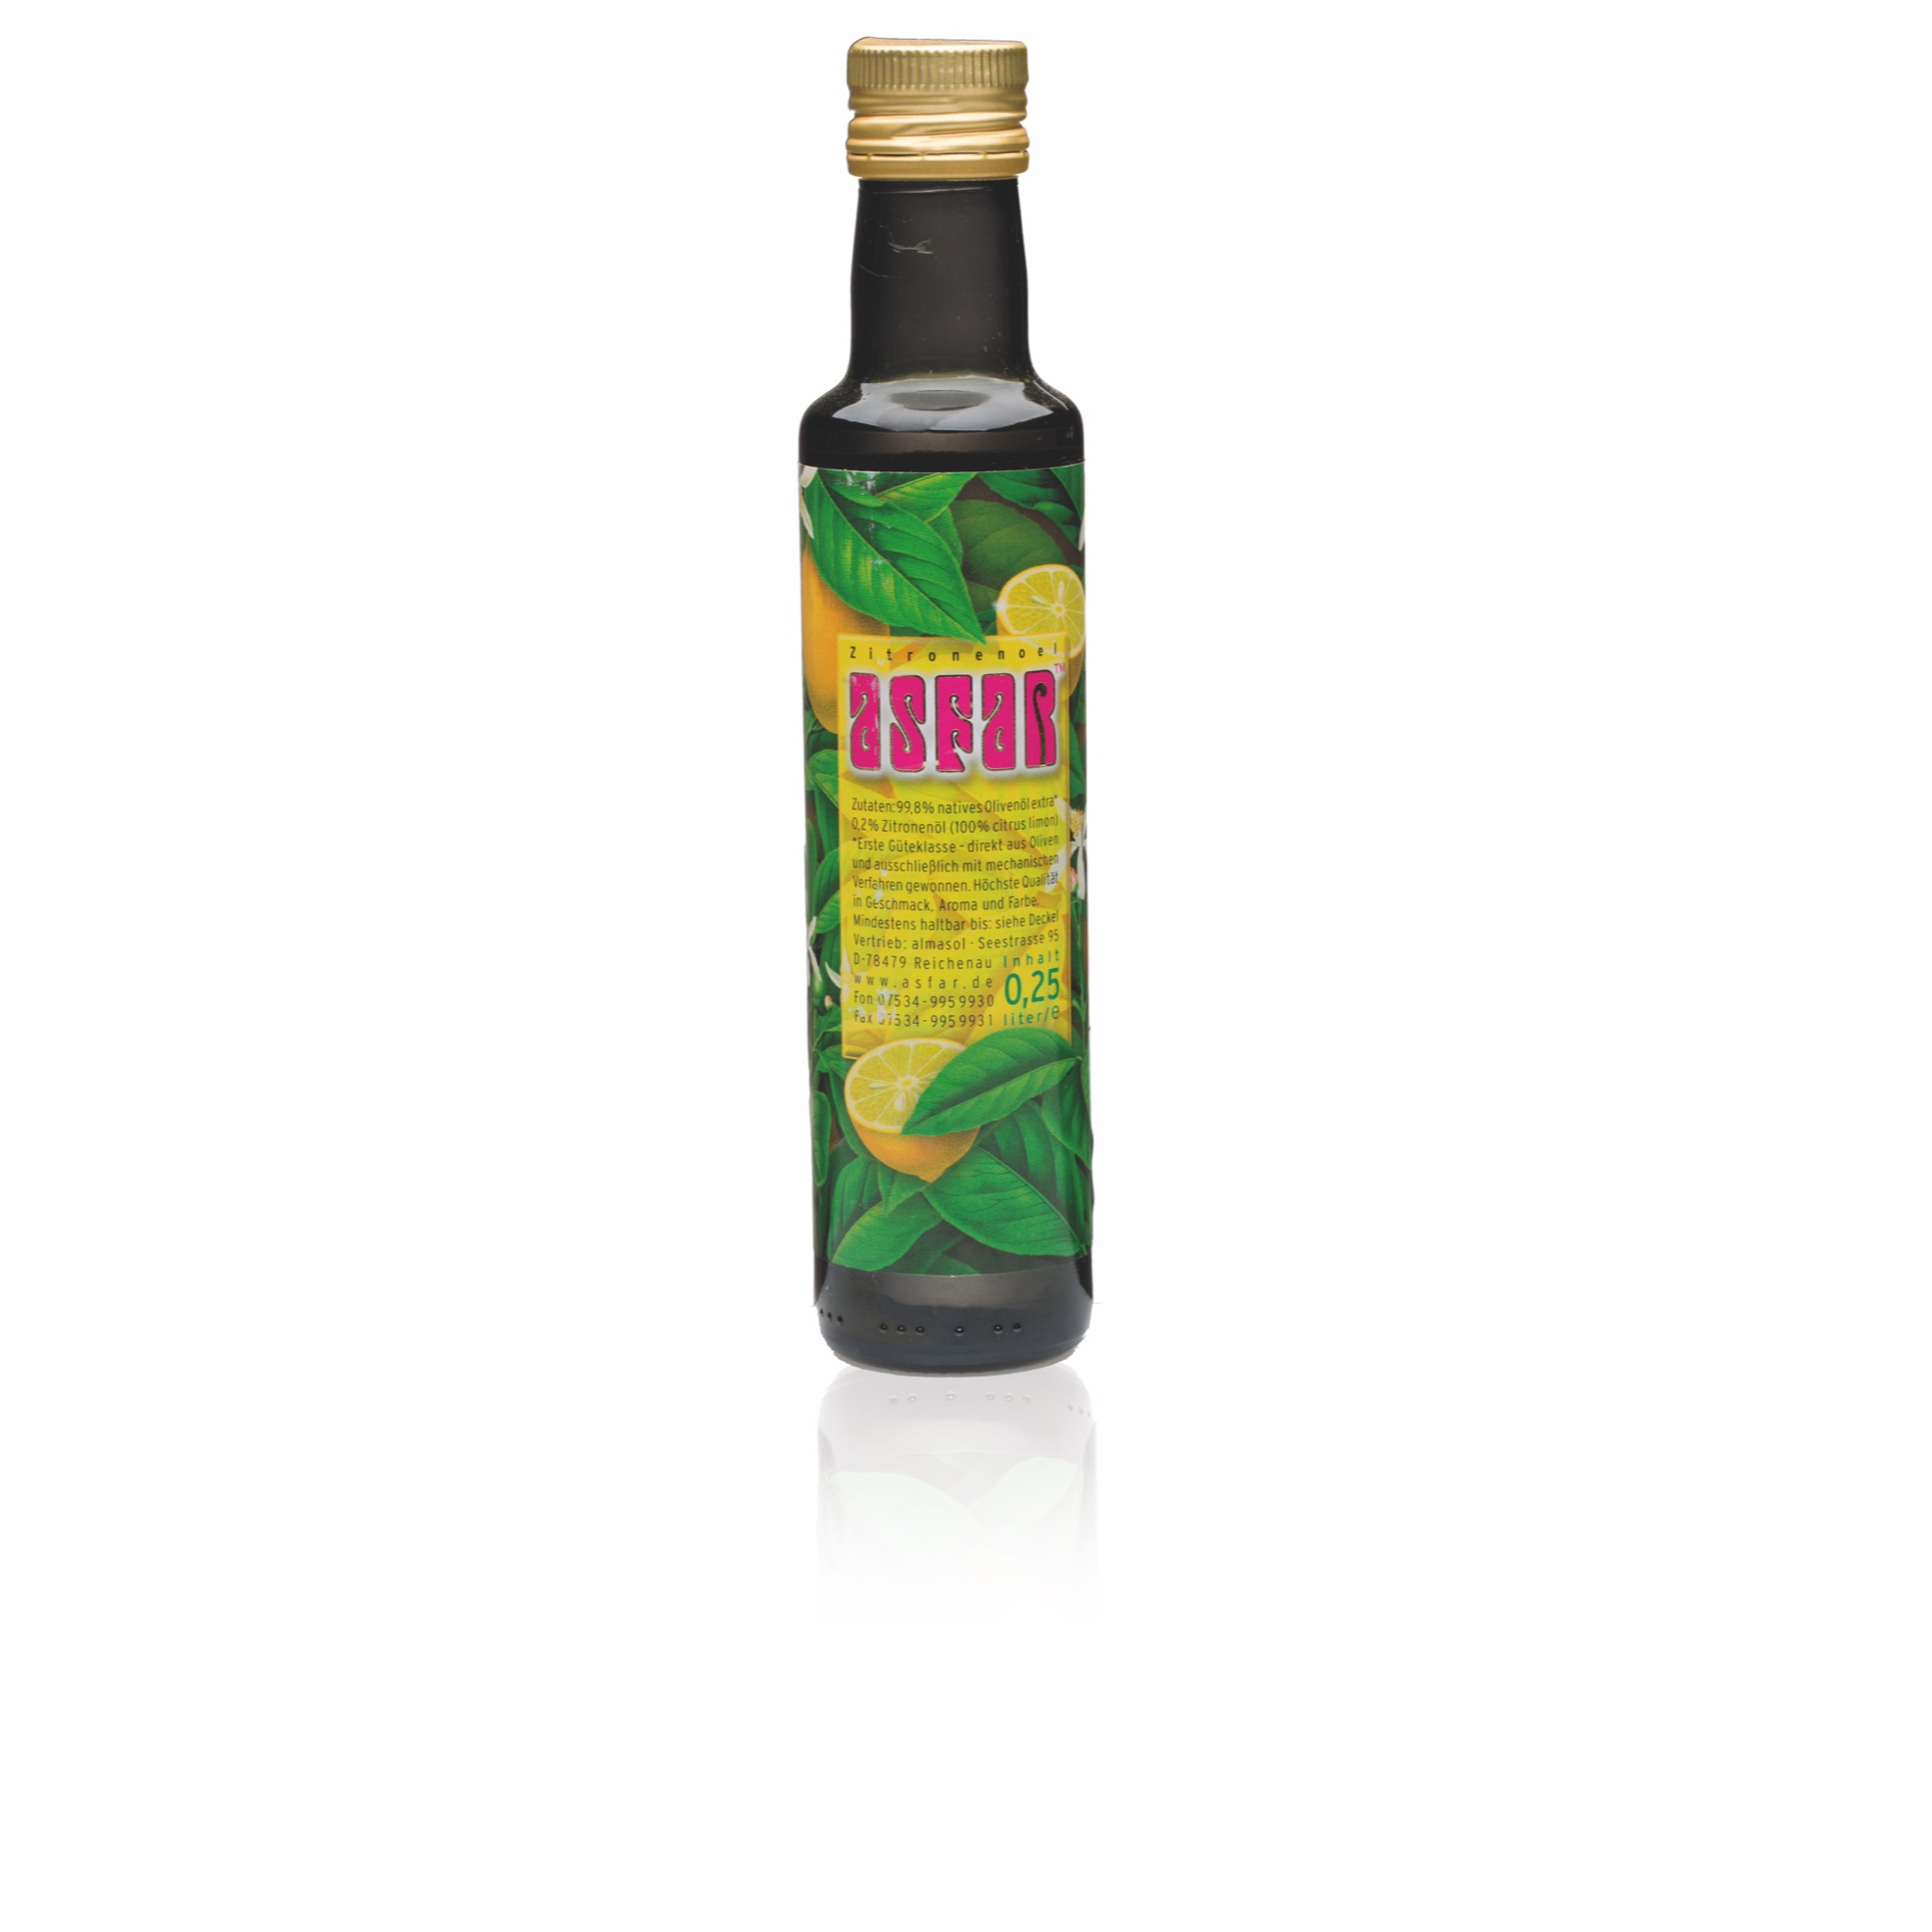 Asfar olivový olej citrónový 250ml